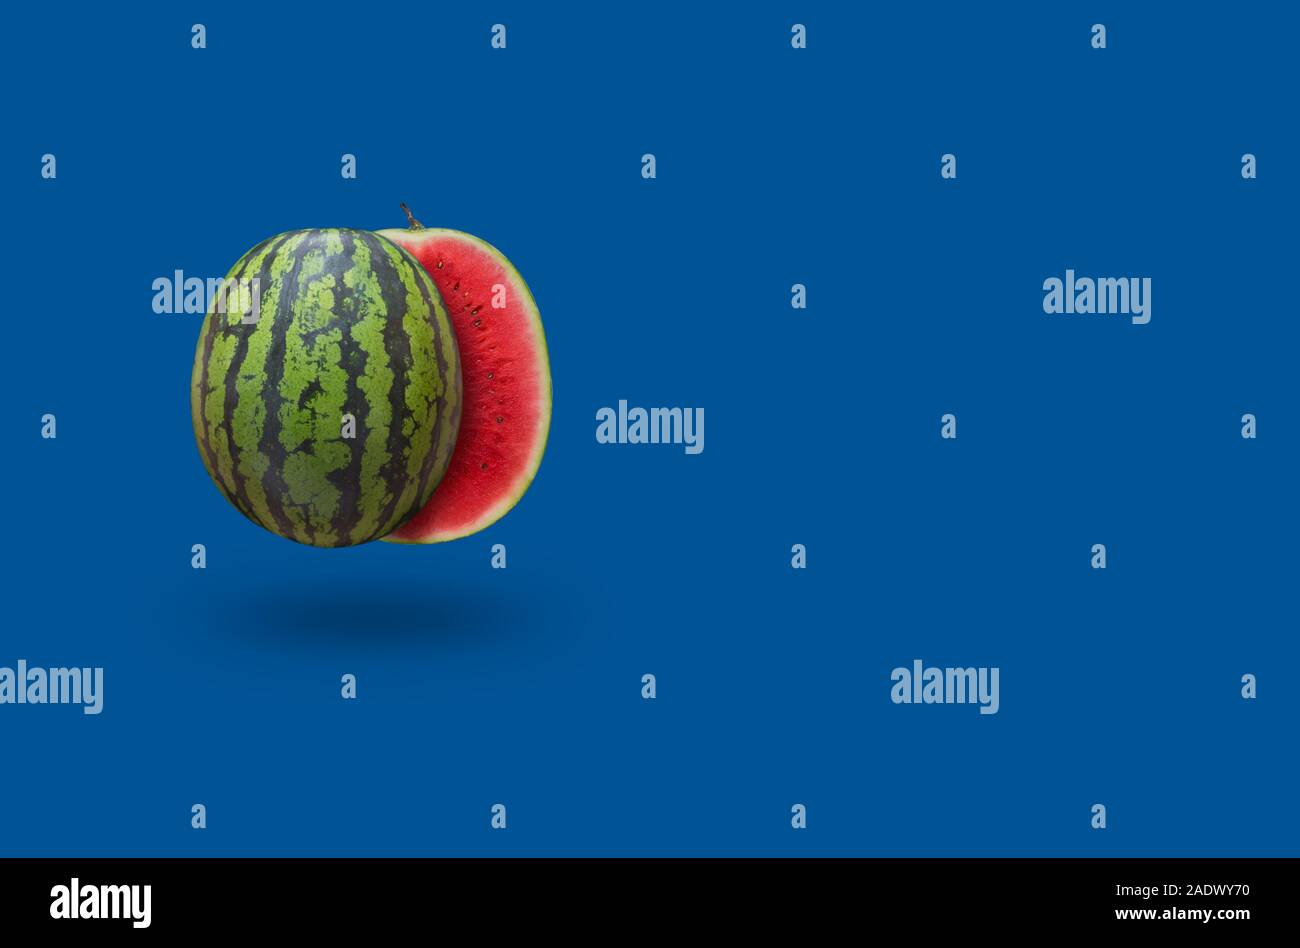 Wassermelone auf einem blauen Hintergrund mit kopieren. Klassische Farbkombination mit Rot und Grün Stockfoto